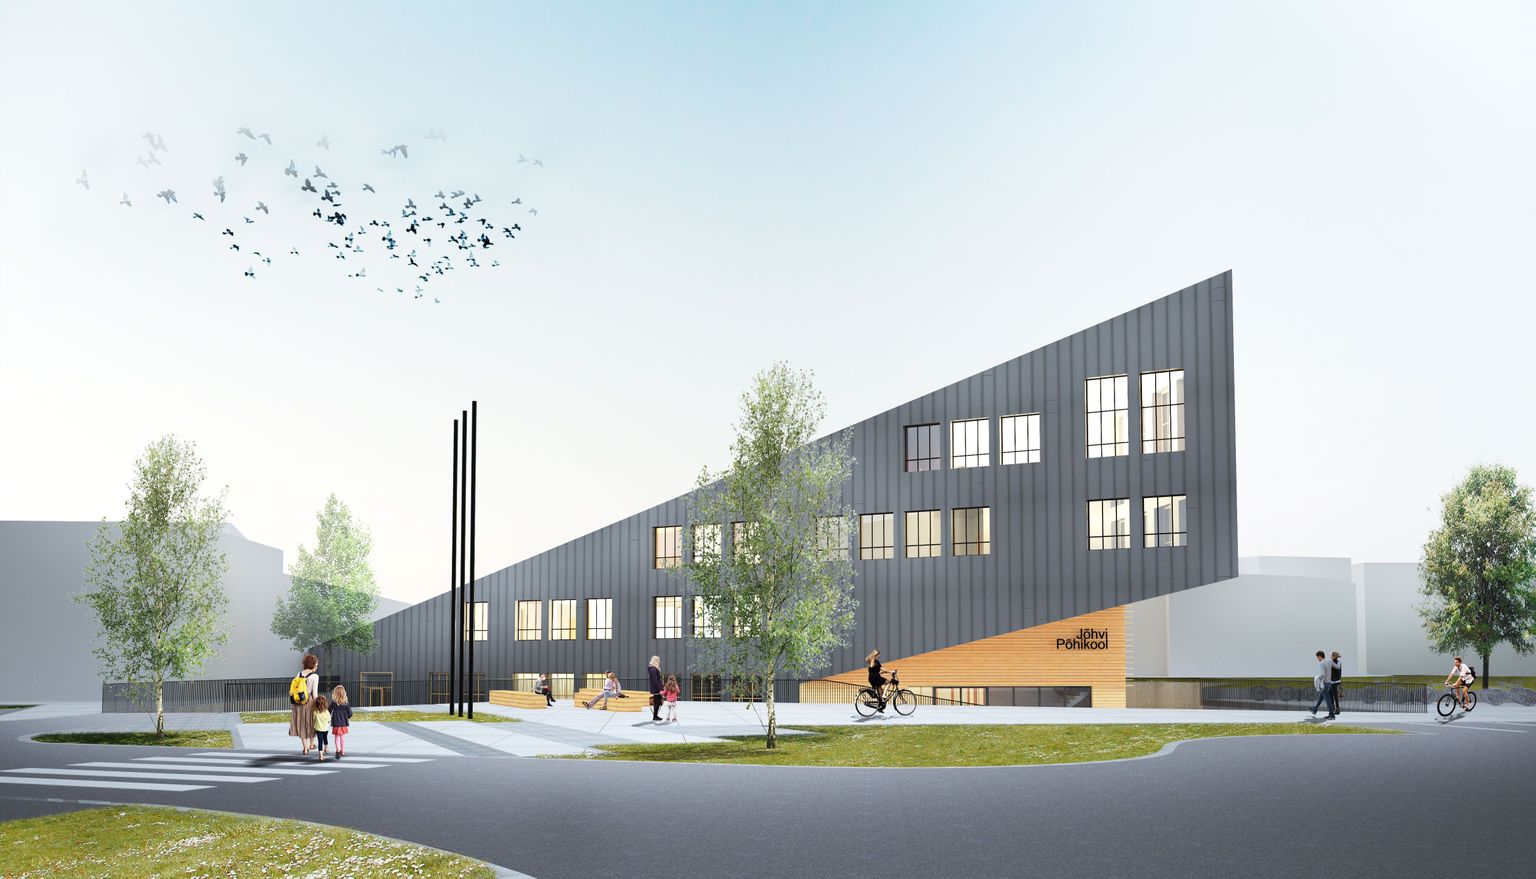 510 õpilasele mõeldud Jõhvi põhikooli uue maja projekteeris büroo Kauss Arhitektuur.